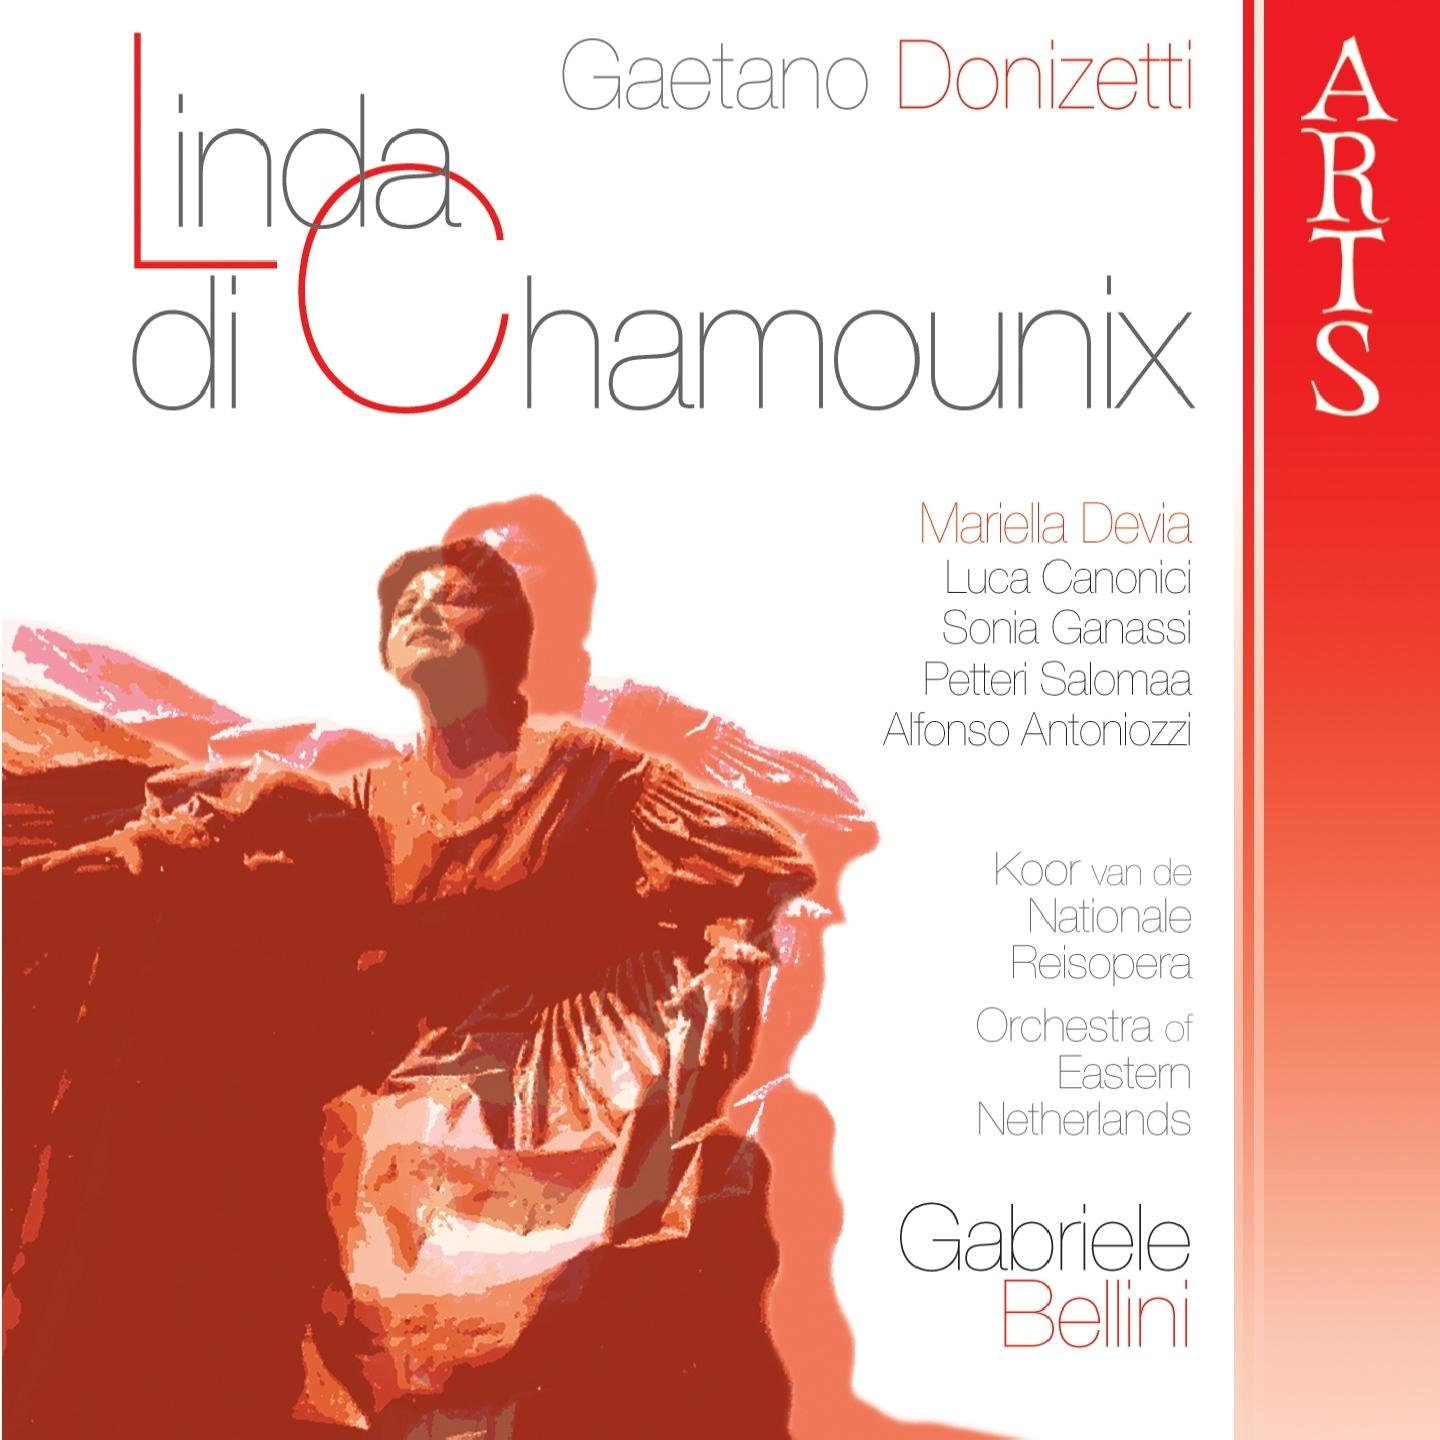 Linda di Chamounix: Act II - Parigi, Scena Romanza, Se tanto in ira agli uomini...